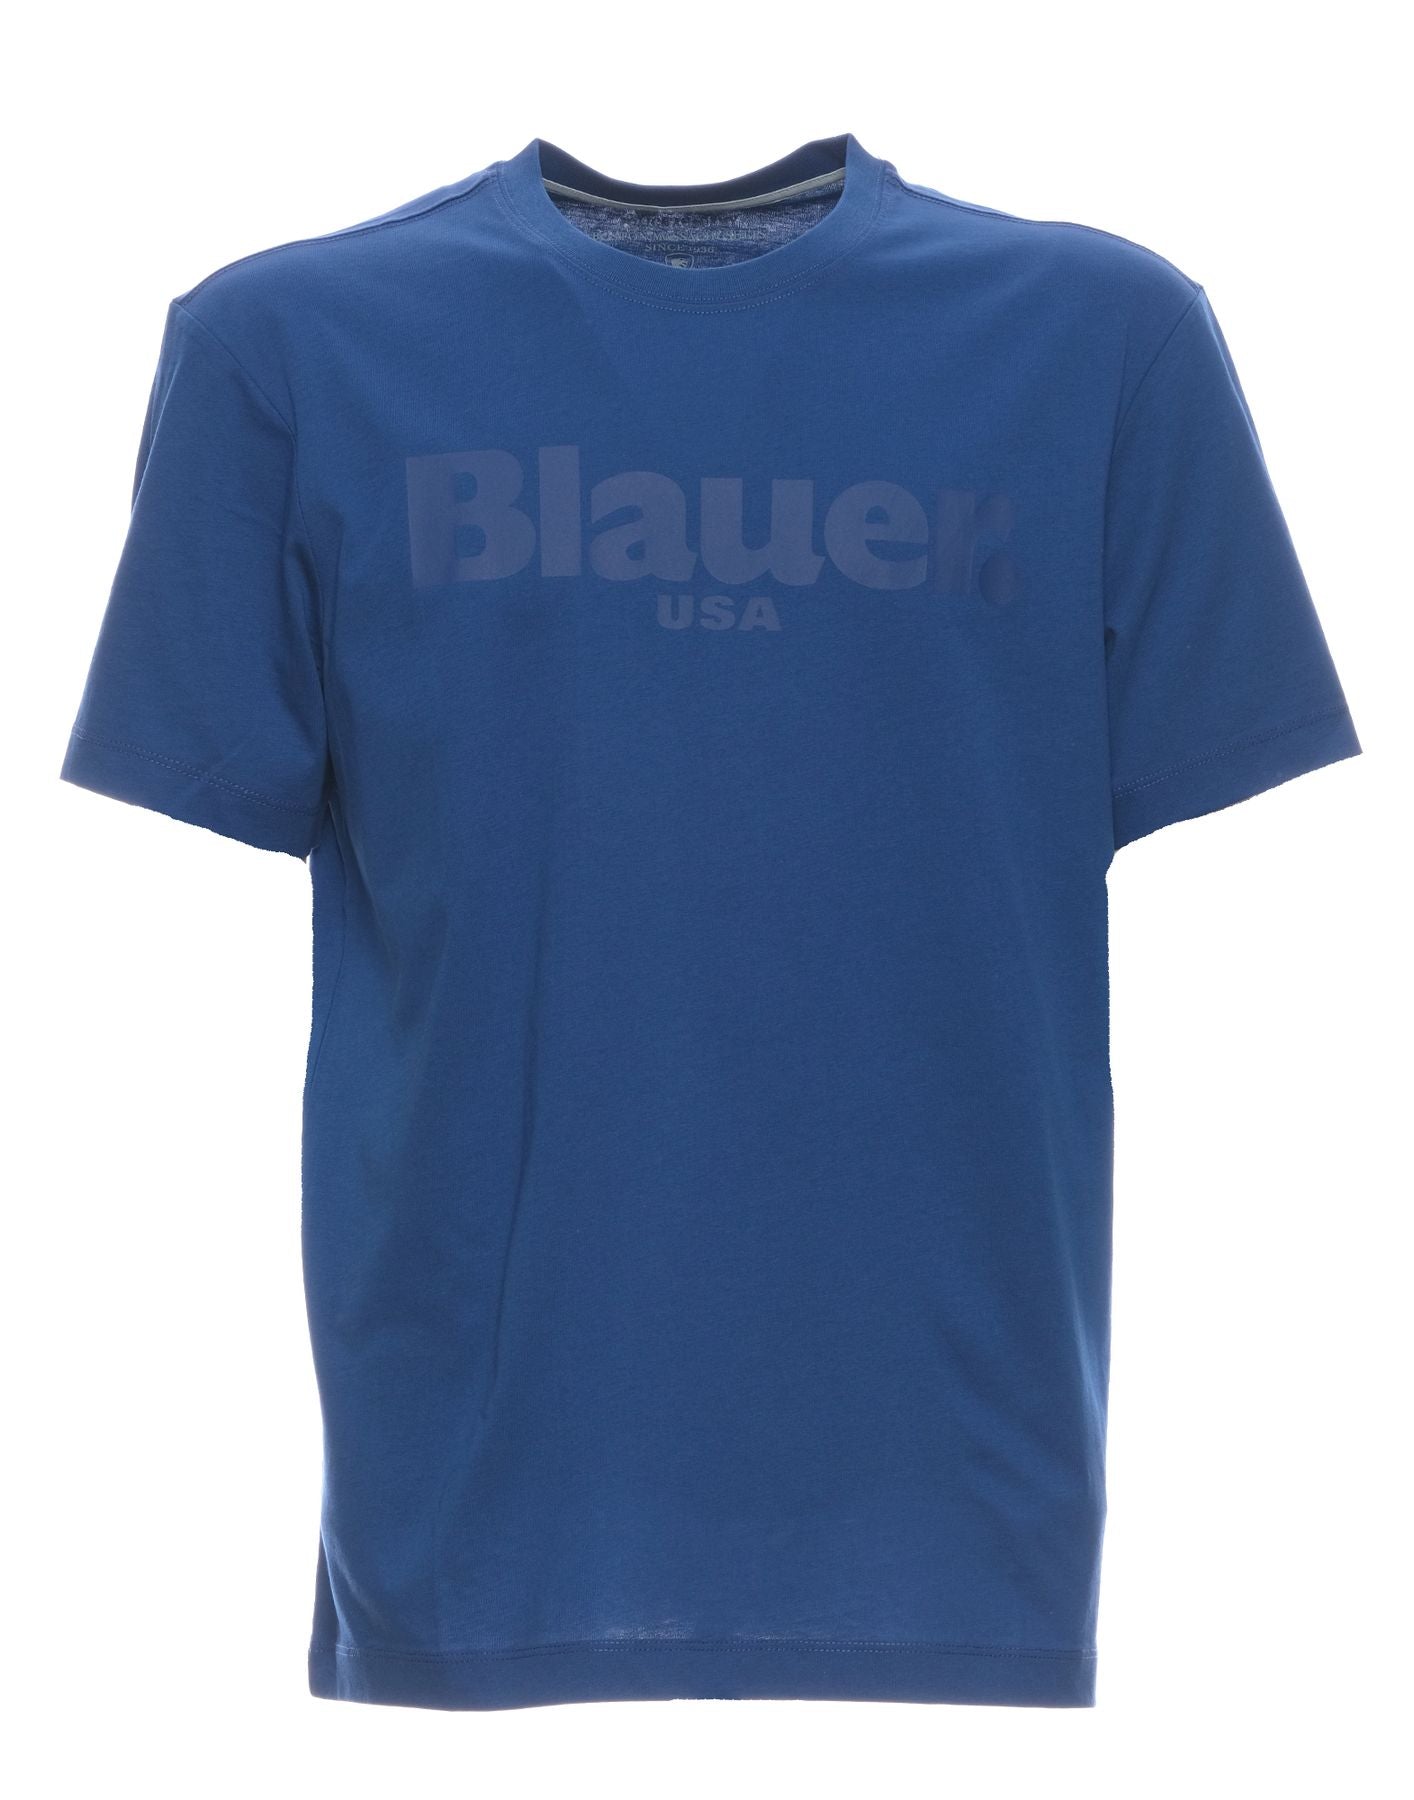 T-shirt pour l'homme Bluh02094 004547 772 Blauer